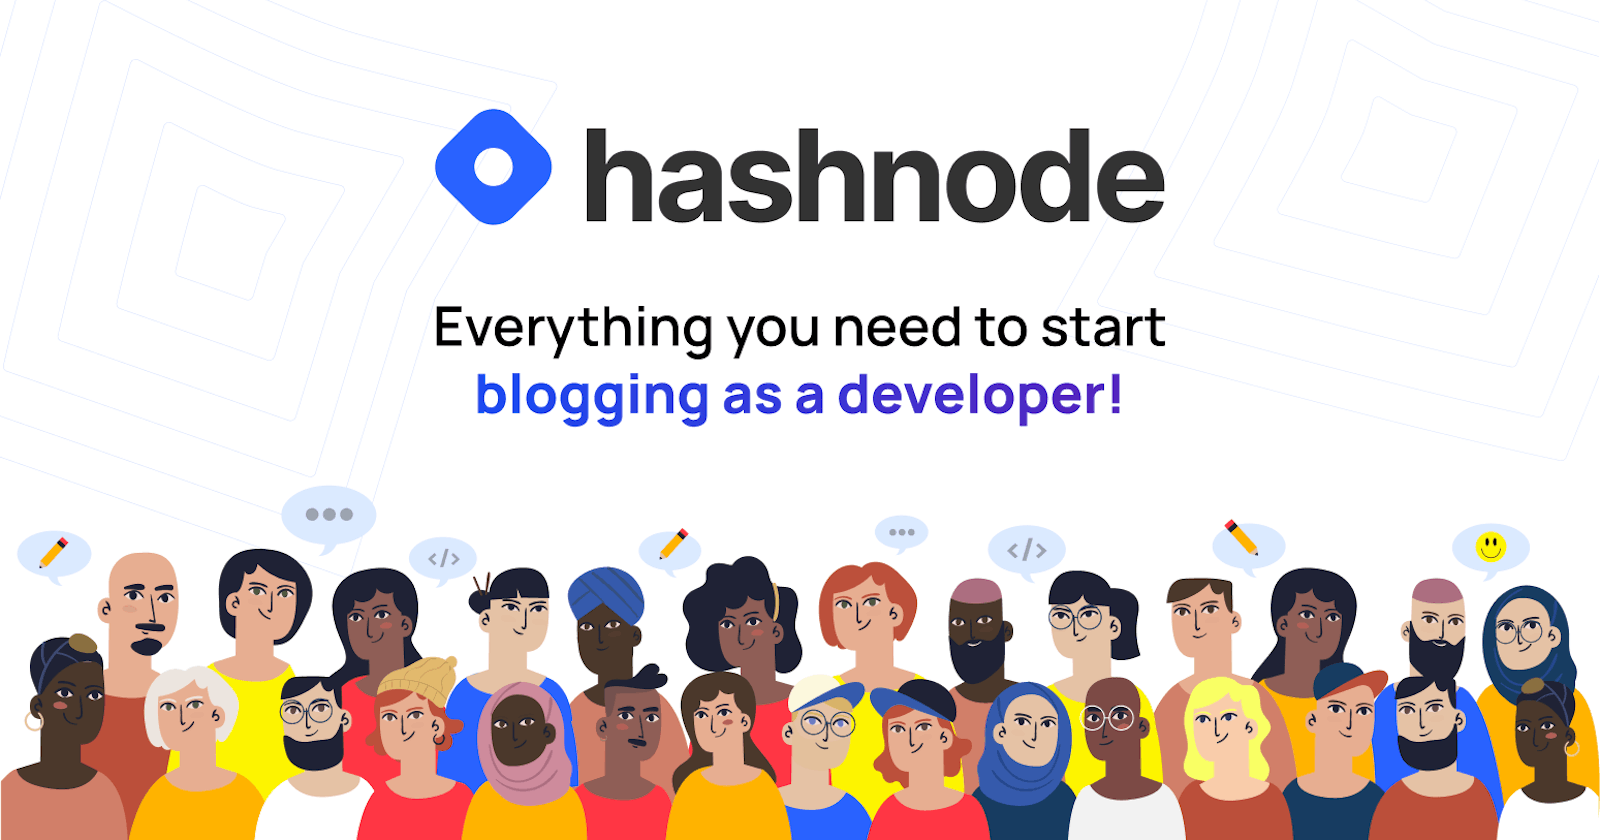 Hashnode: The Social Network for Developers